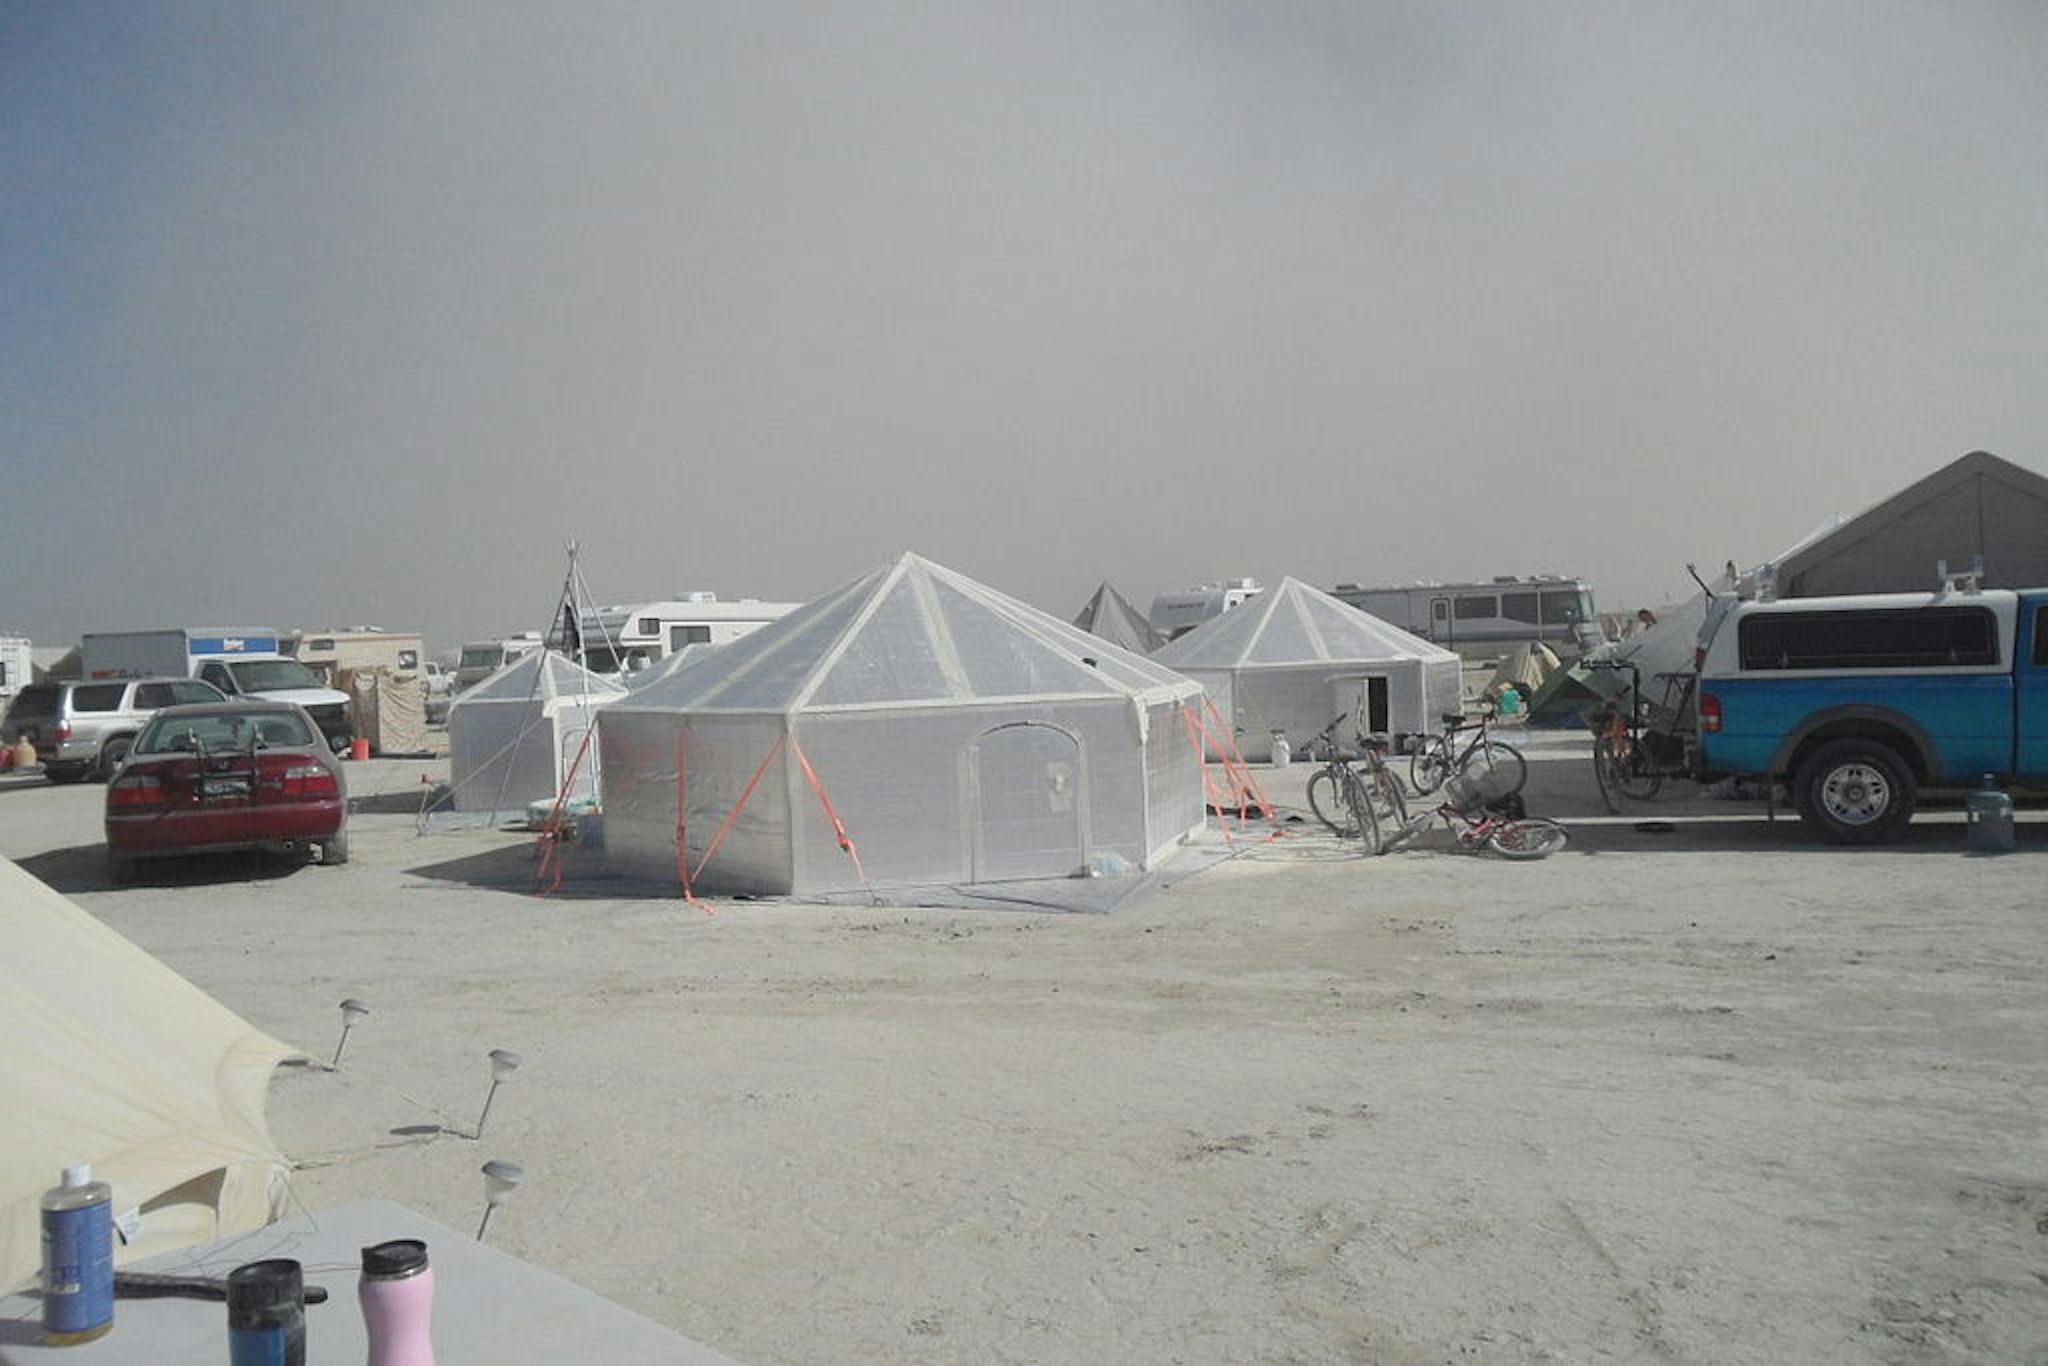 Hexayurt tại Burning Man, 2010